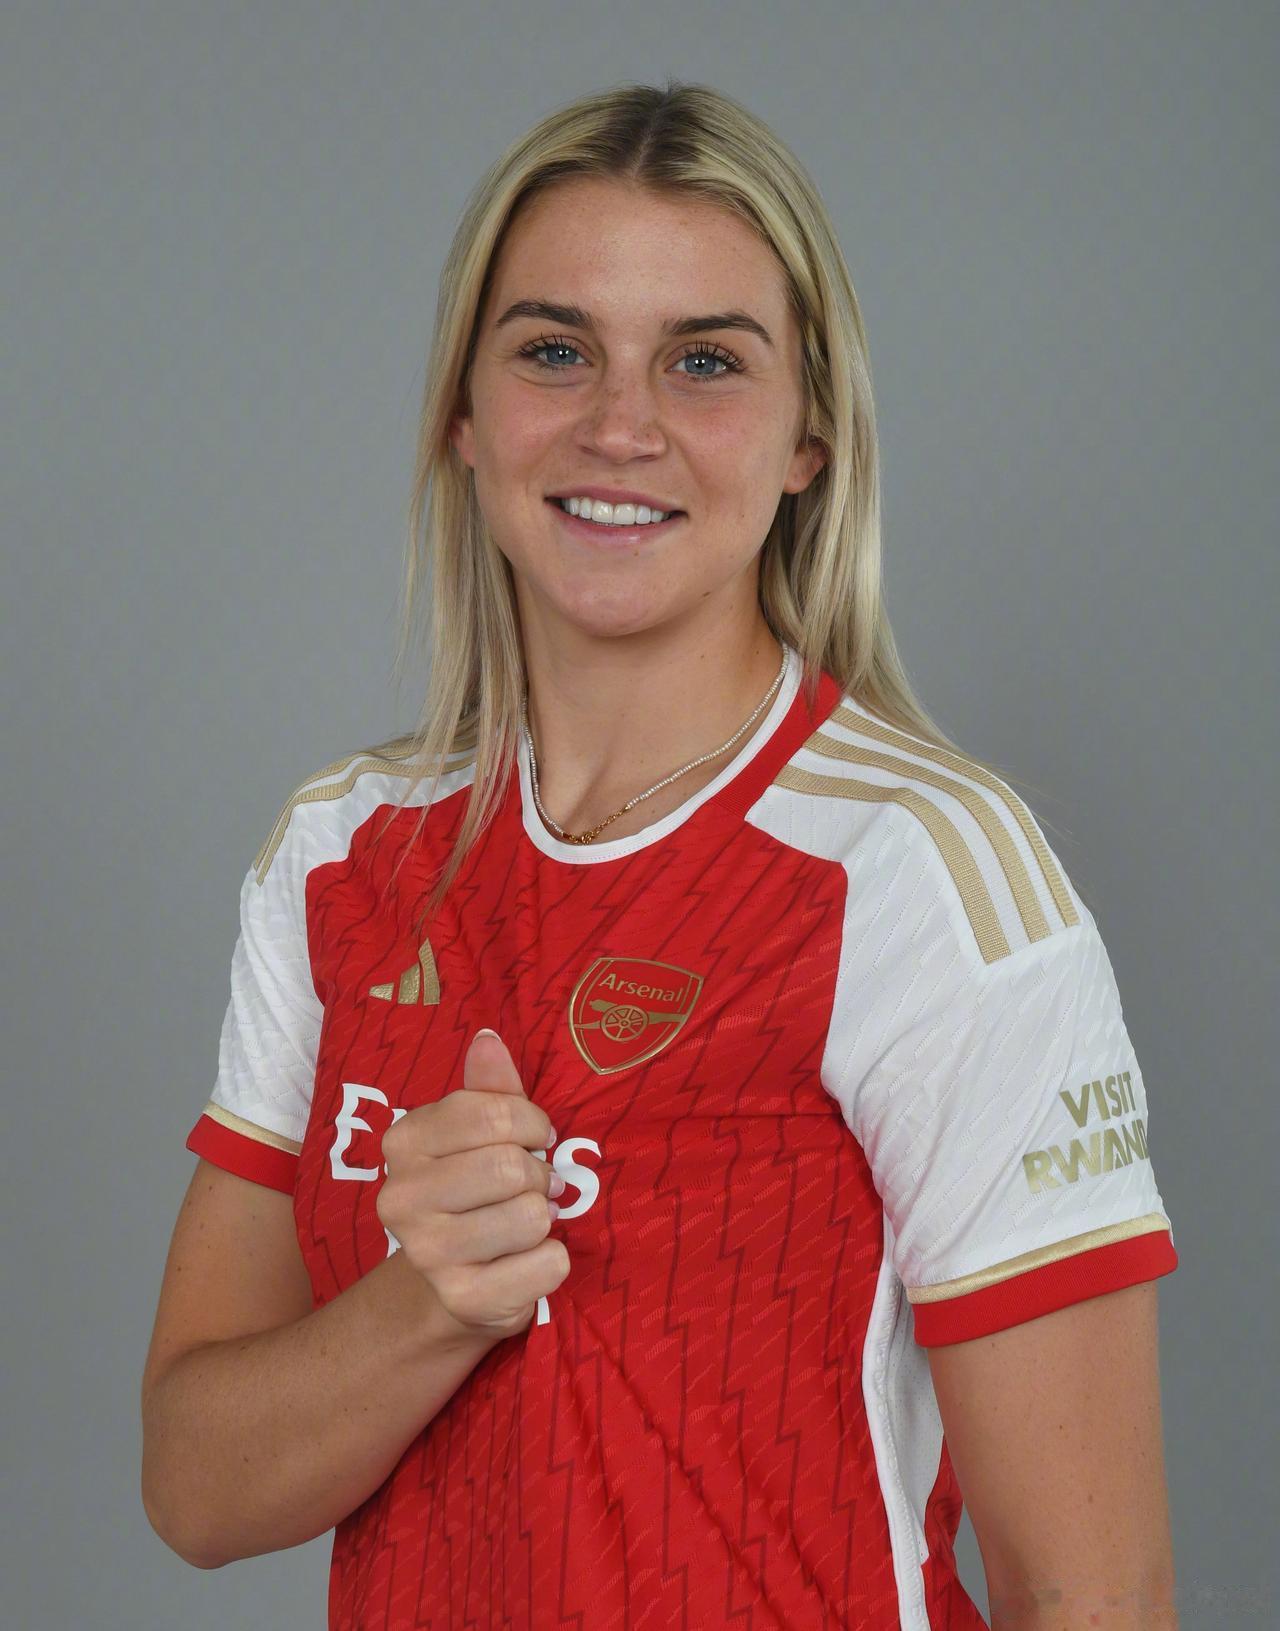 上赛季曼联女队的核心球员鲁索选择加盟了阿森纳女足，身披23号球衣。

(1)